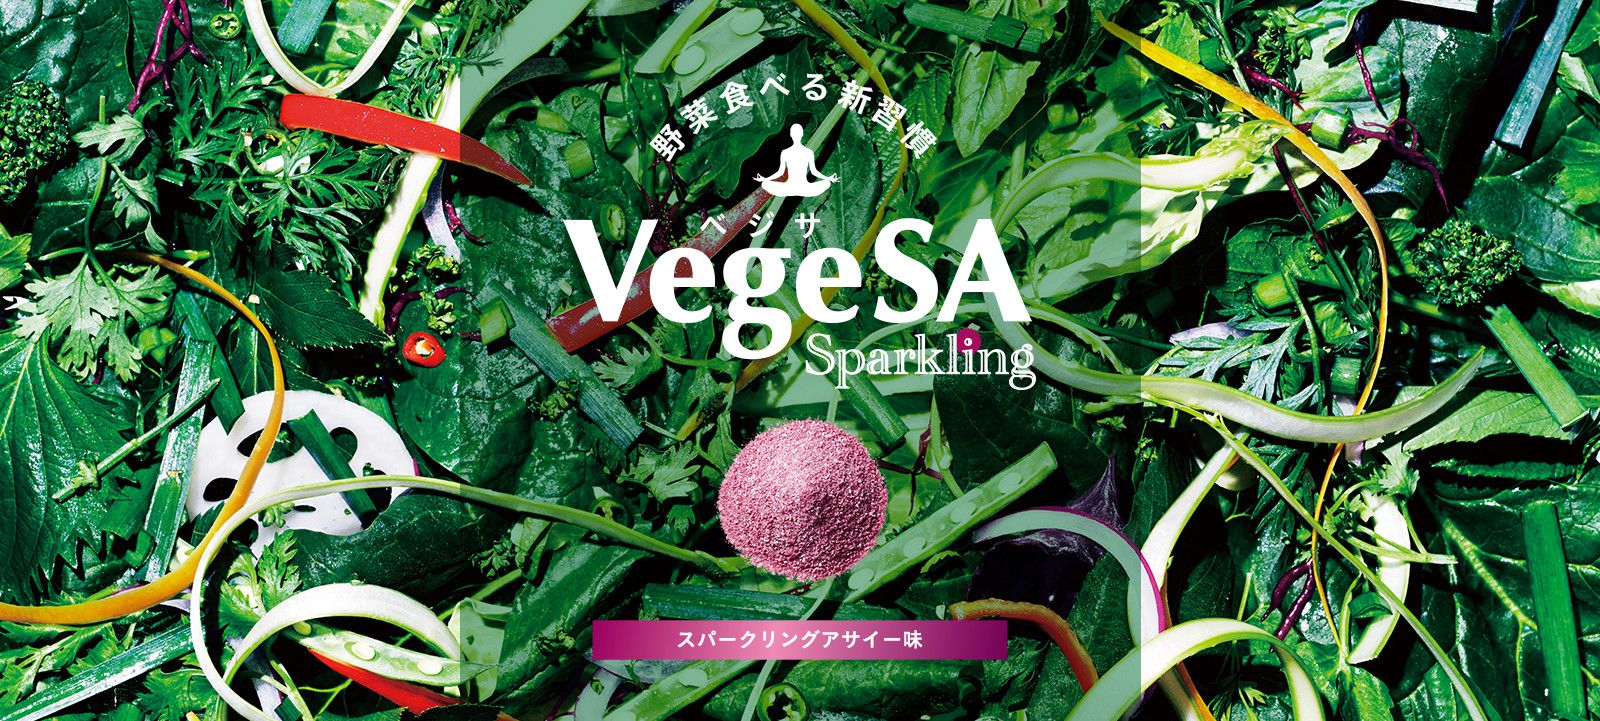 野菜食べる新習慣 VegeSA Sparkling スパークリングアサイー味